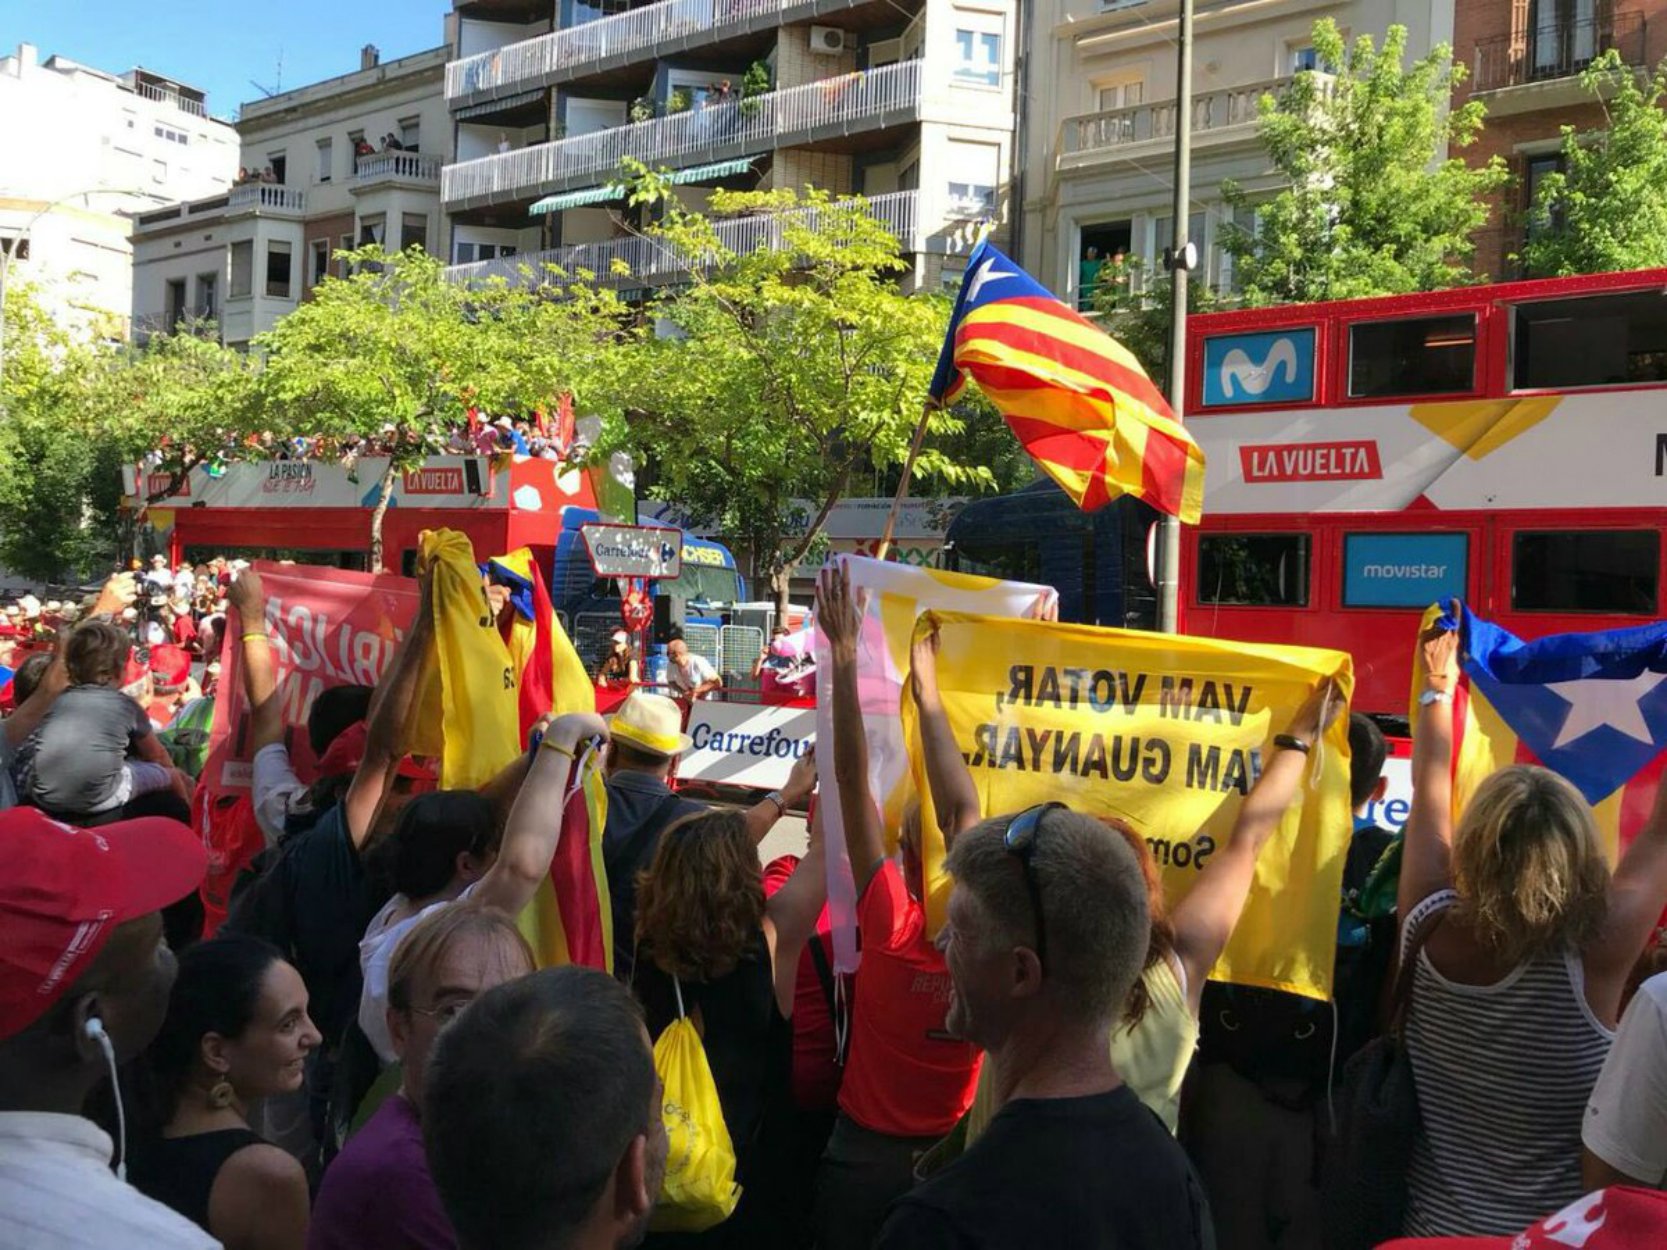 VÍDEO: La Vuelta a España llega a Lleida entre estelades y gritos de "libertad presos políticos"